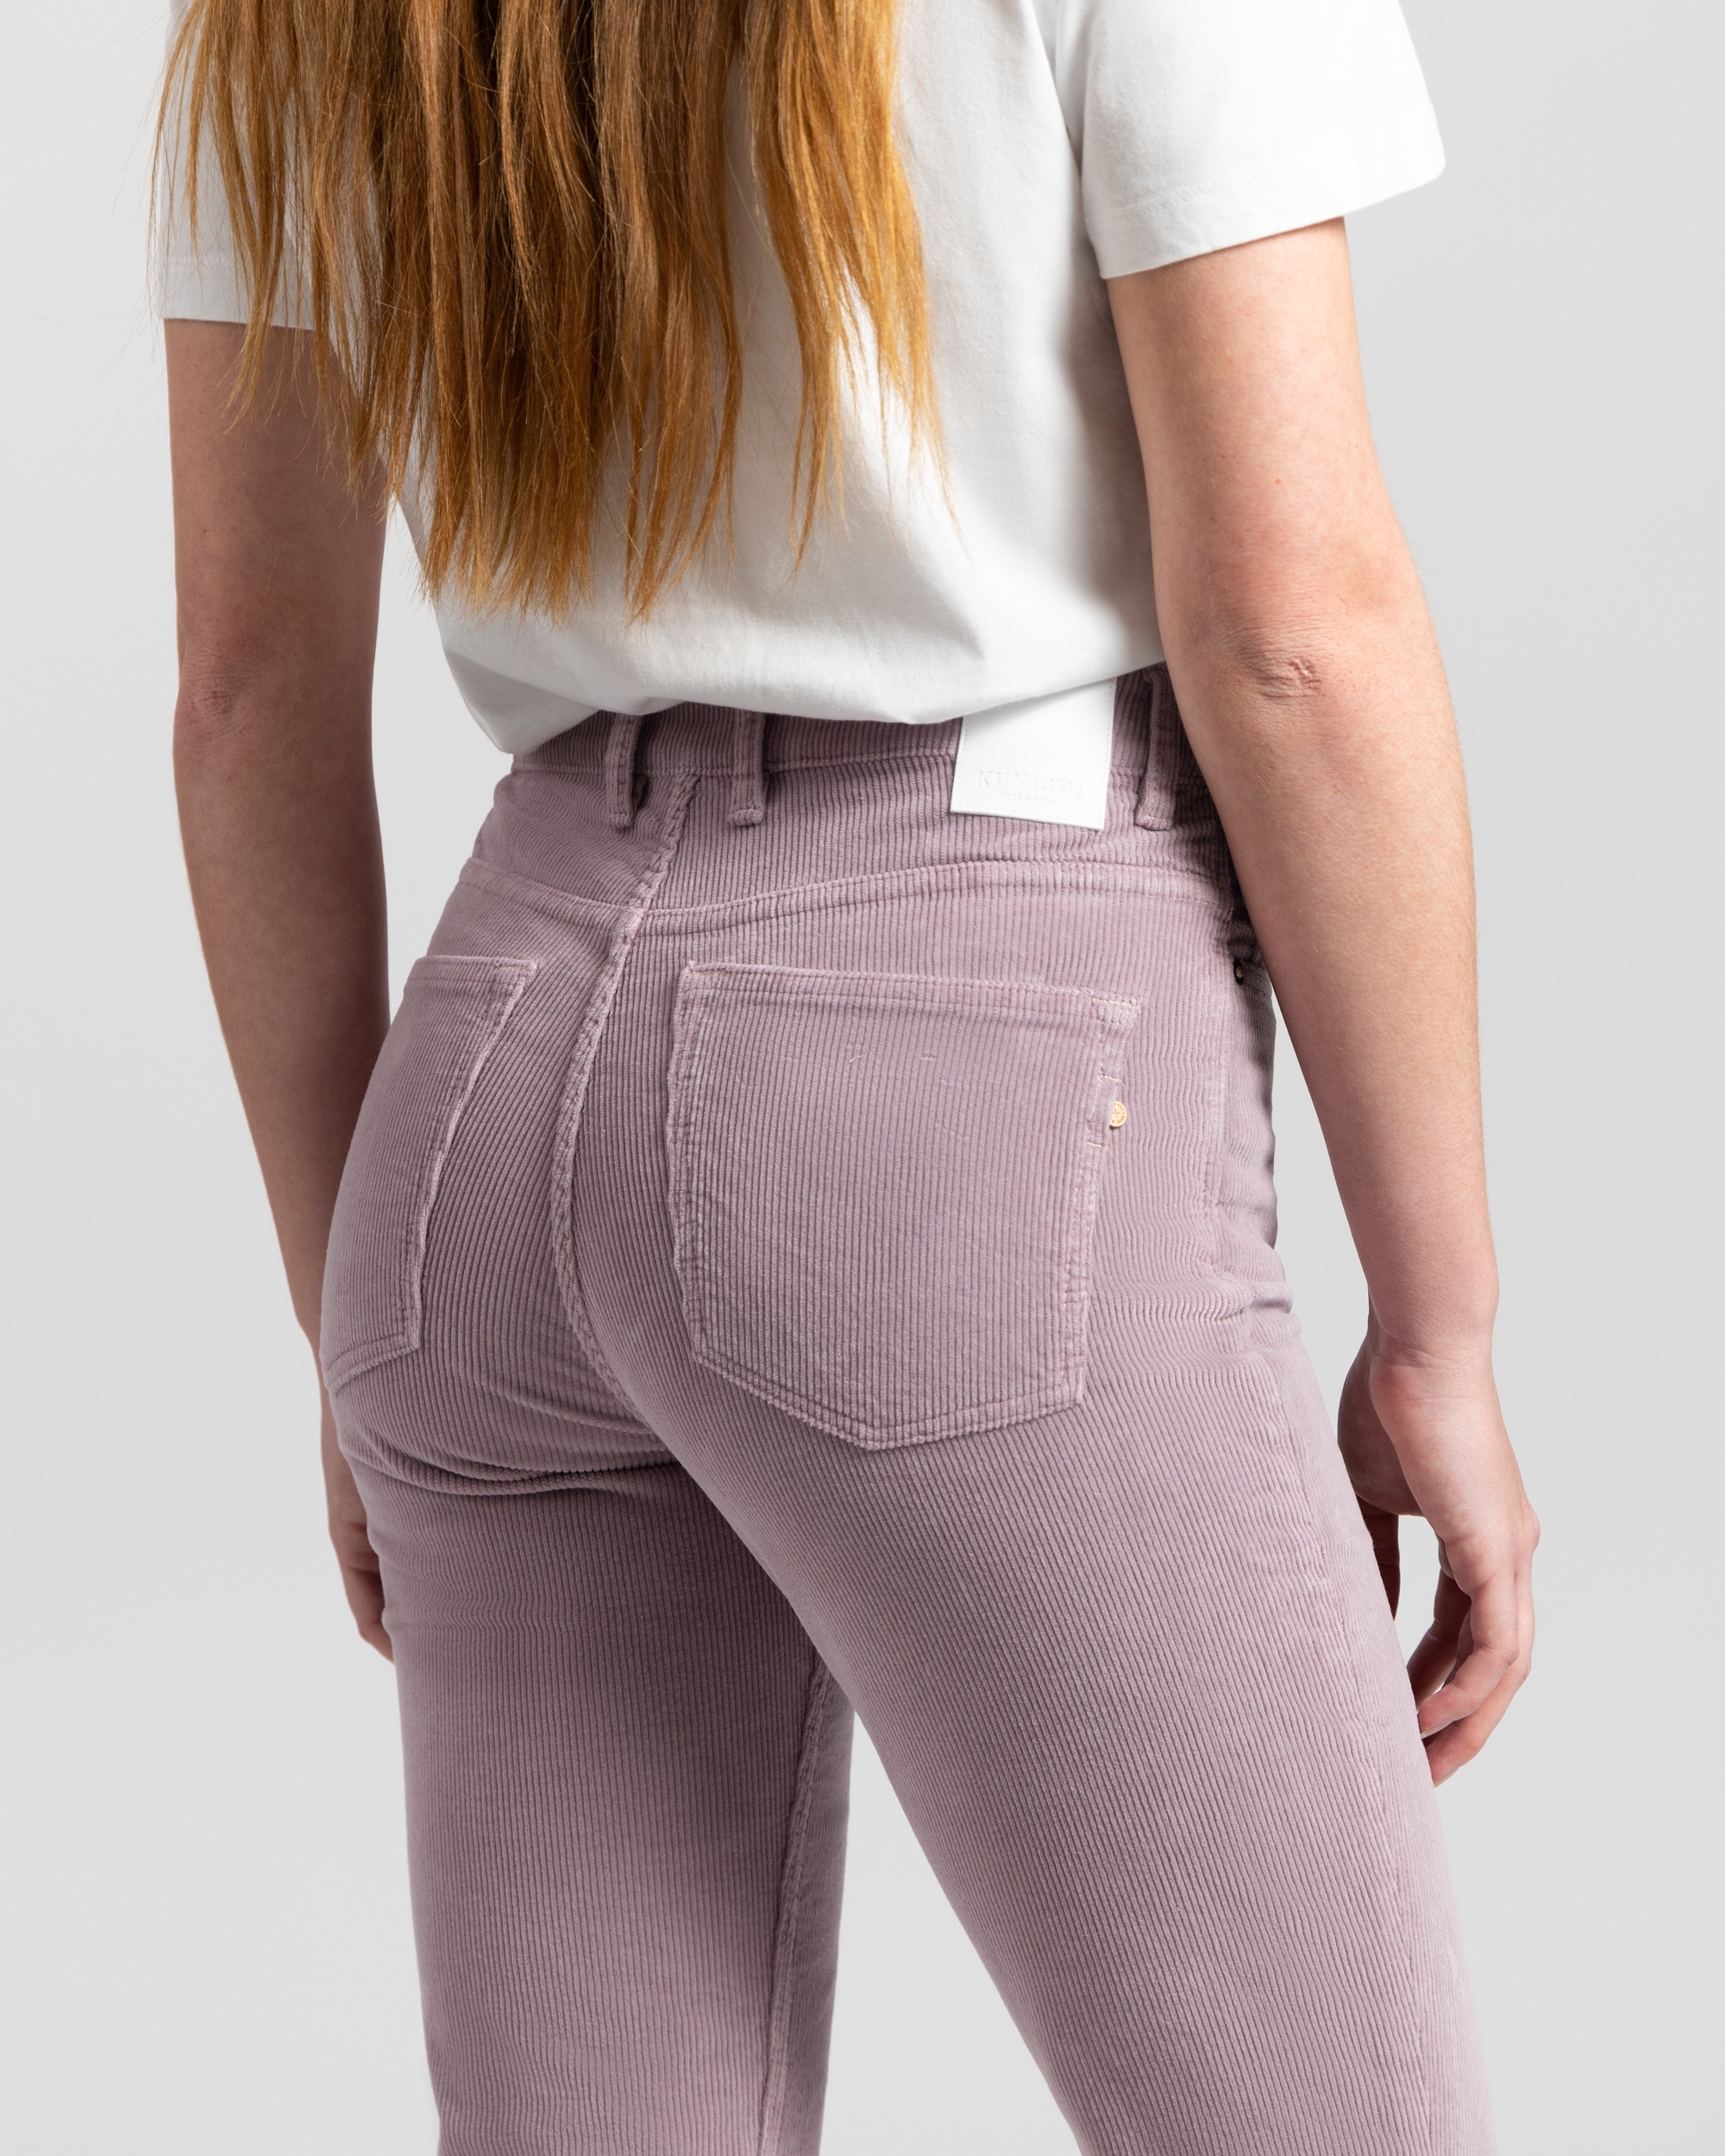 Pantalon Lisette - velours - lavender grey - coton biologique - Kuyichi 03